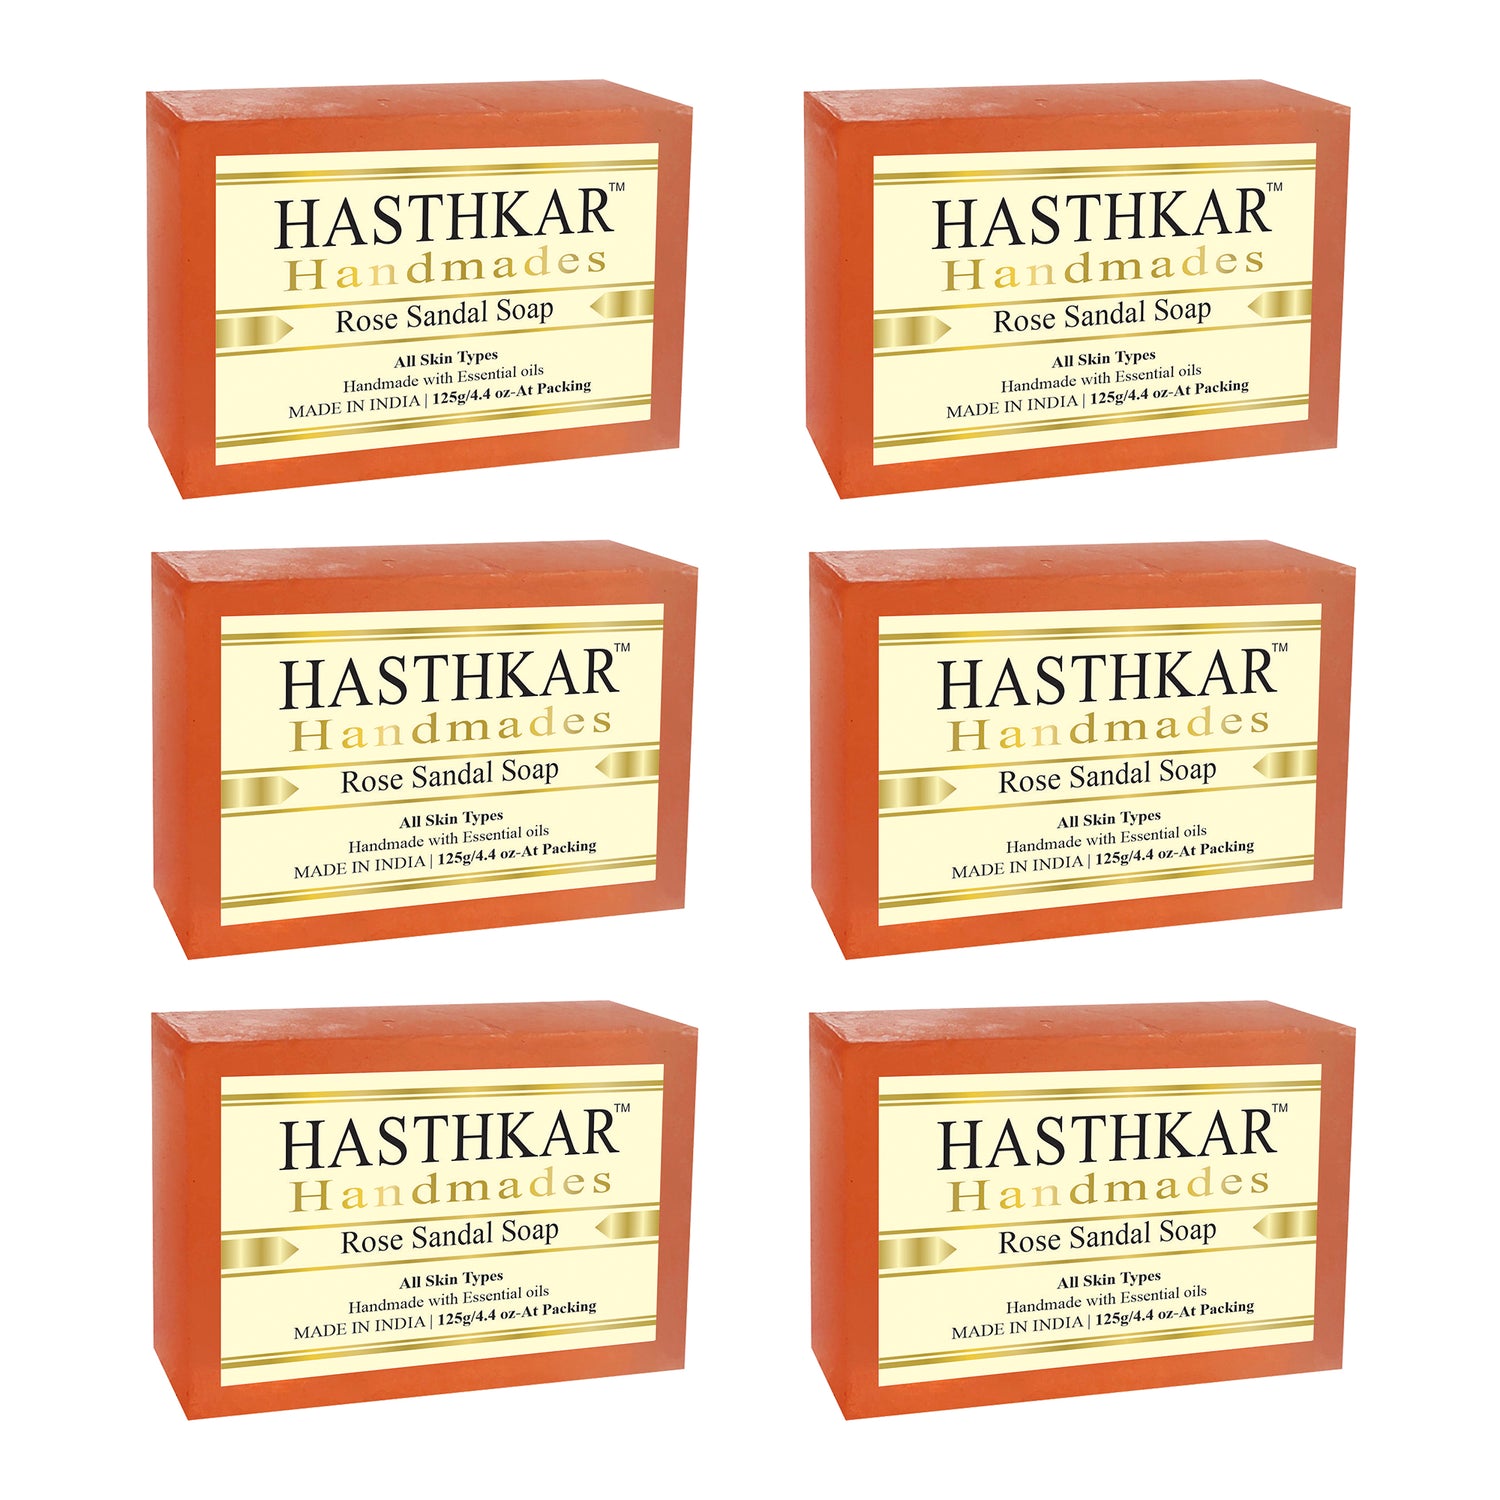 Hasthkar handmades rose sandal bathing soap men and women pack of 6